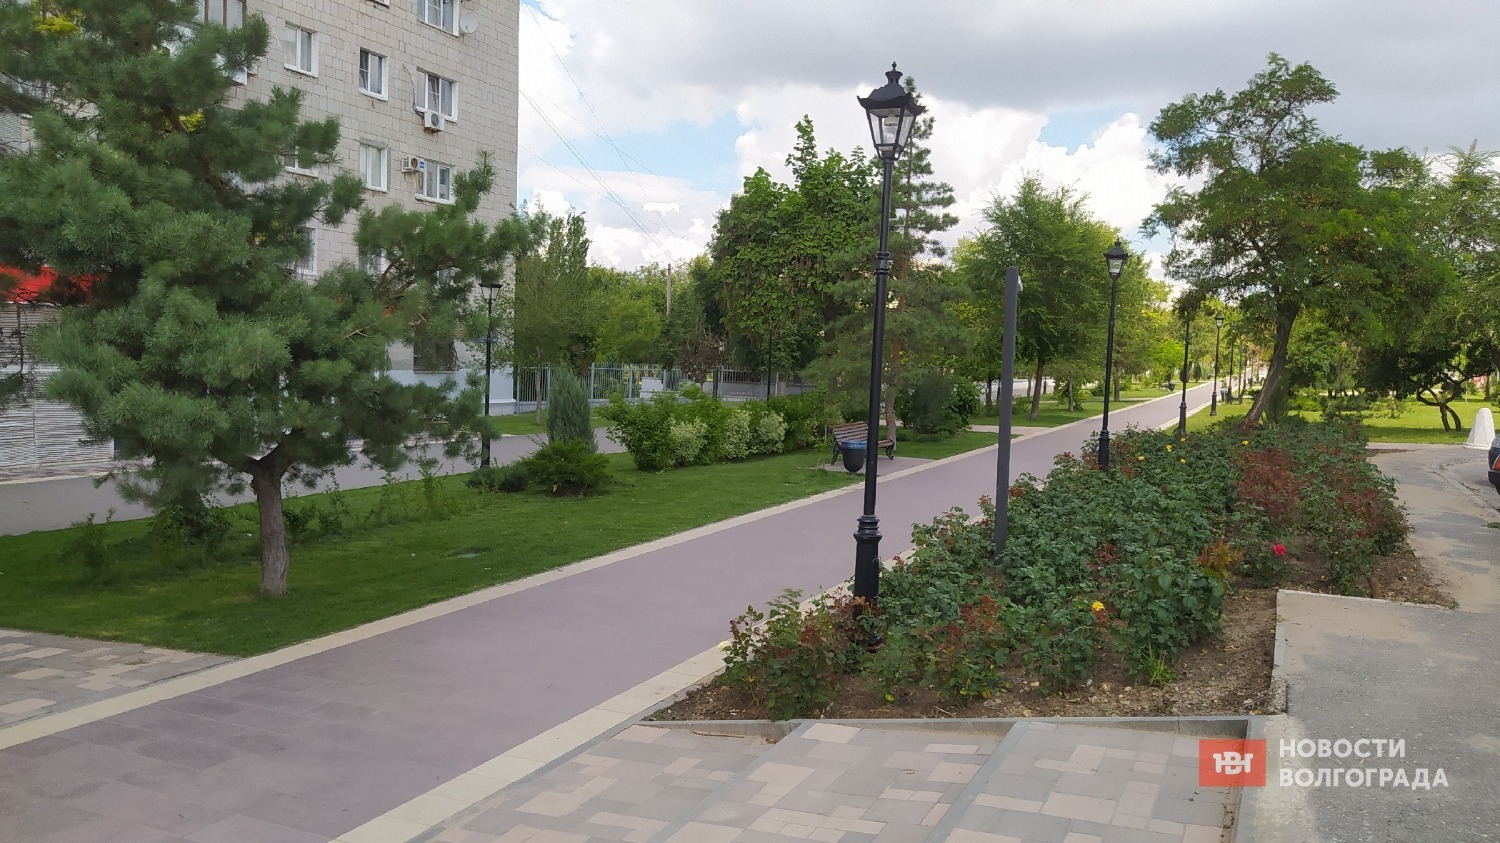 Бульвар вдоль проспекта им. Жукова в Волгограде благоустроили в 2022 году